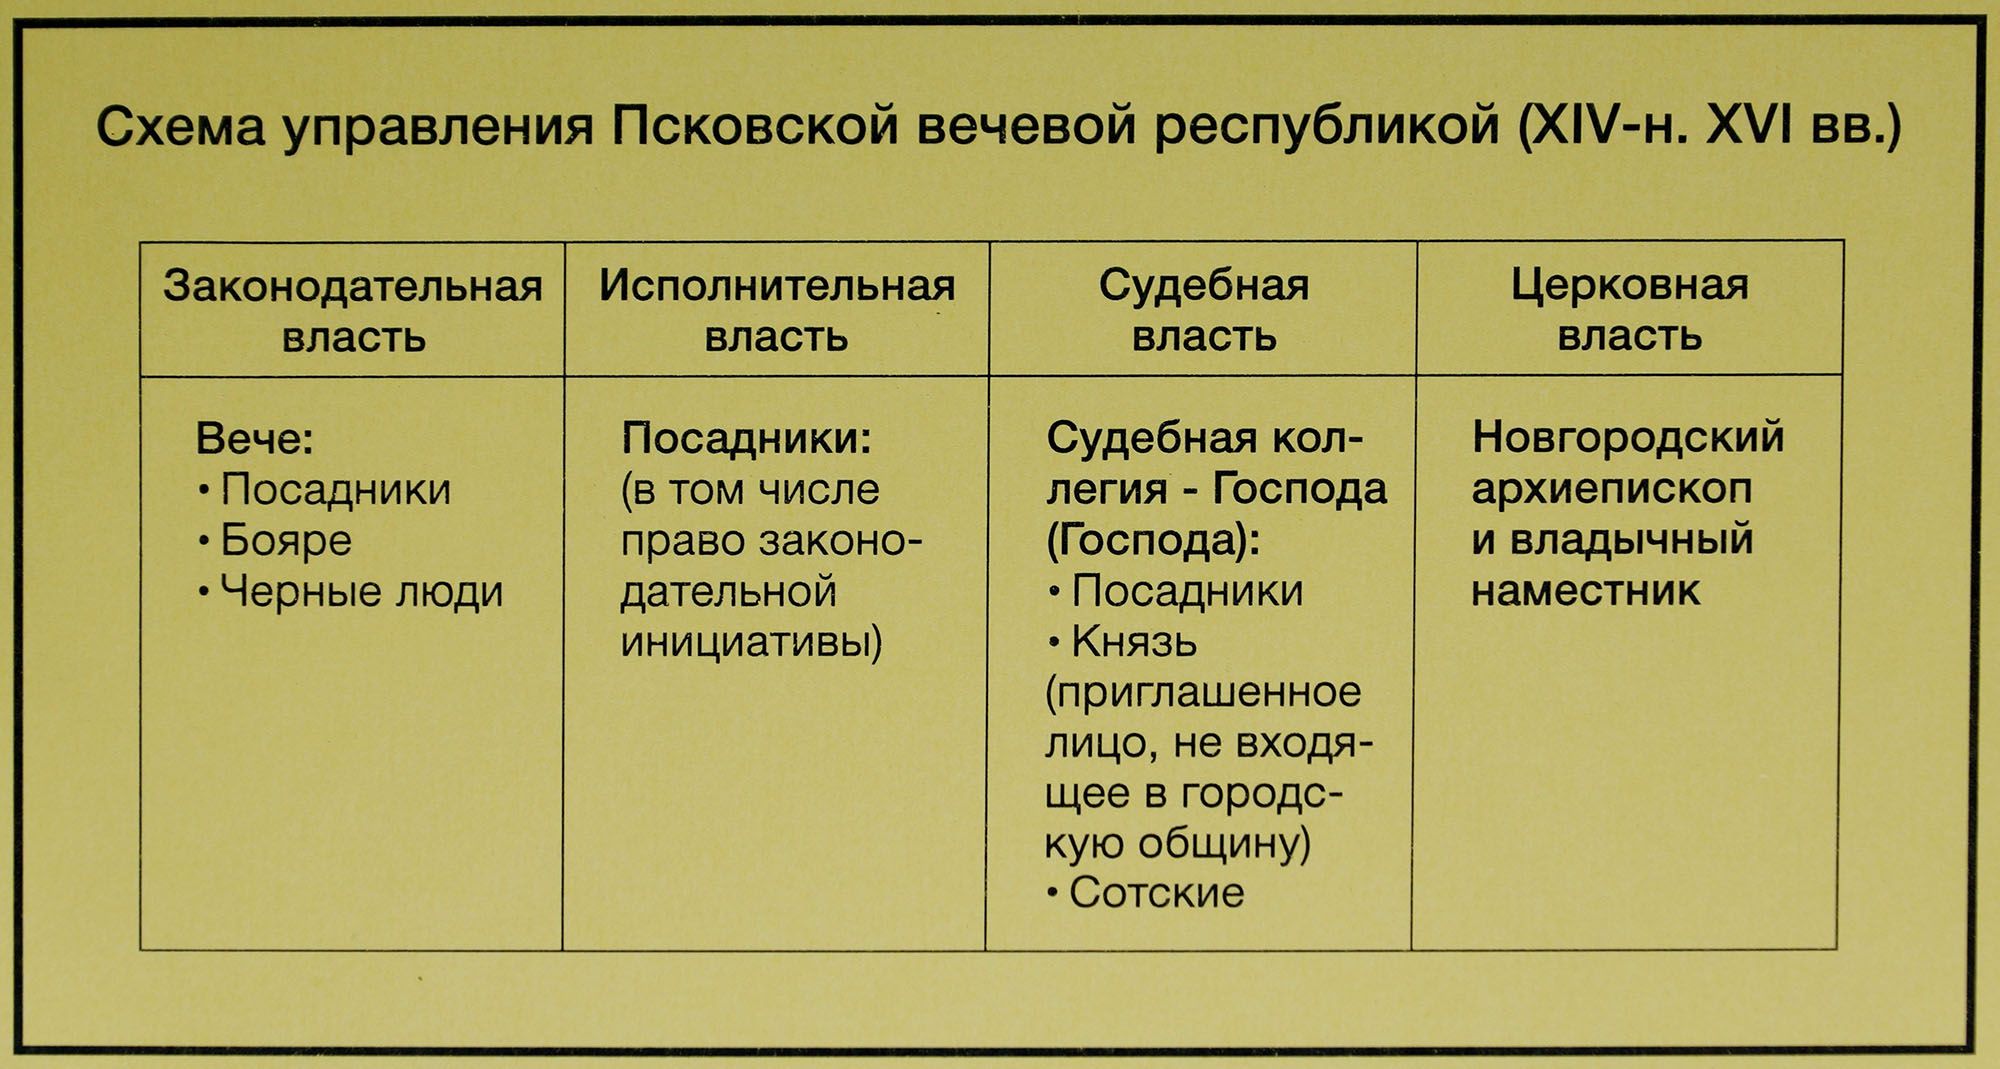 Схема управления Псковской вечевой республикой (XIV - начало XVI веков).